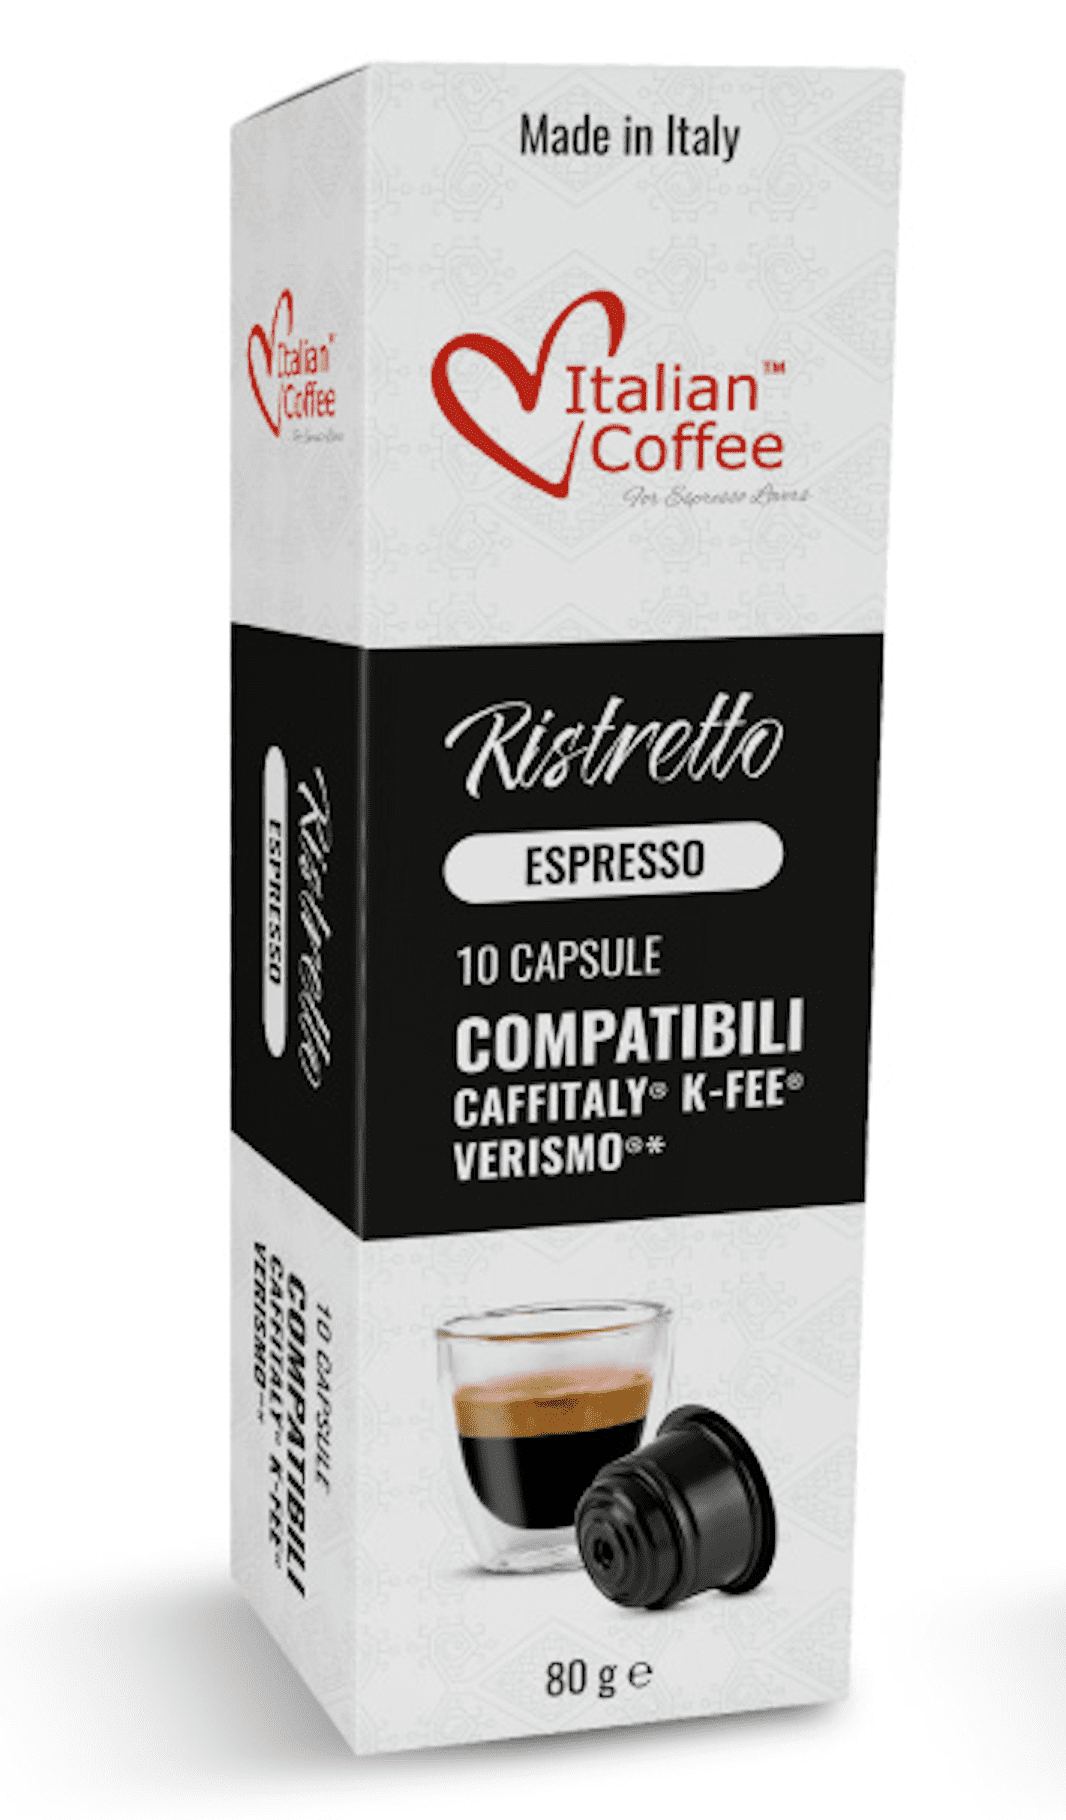 Achat / Vente Illy Café en capsules espresso classico, 10 capsules